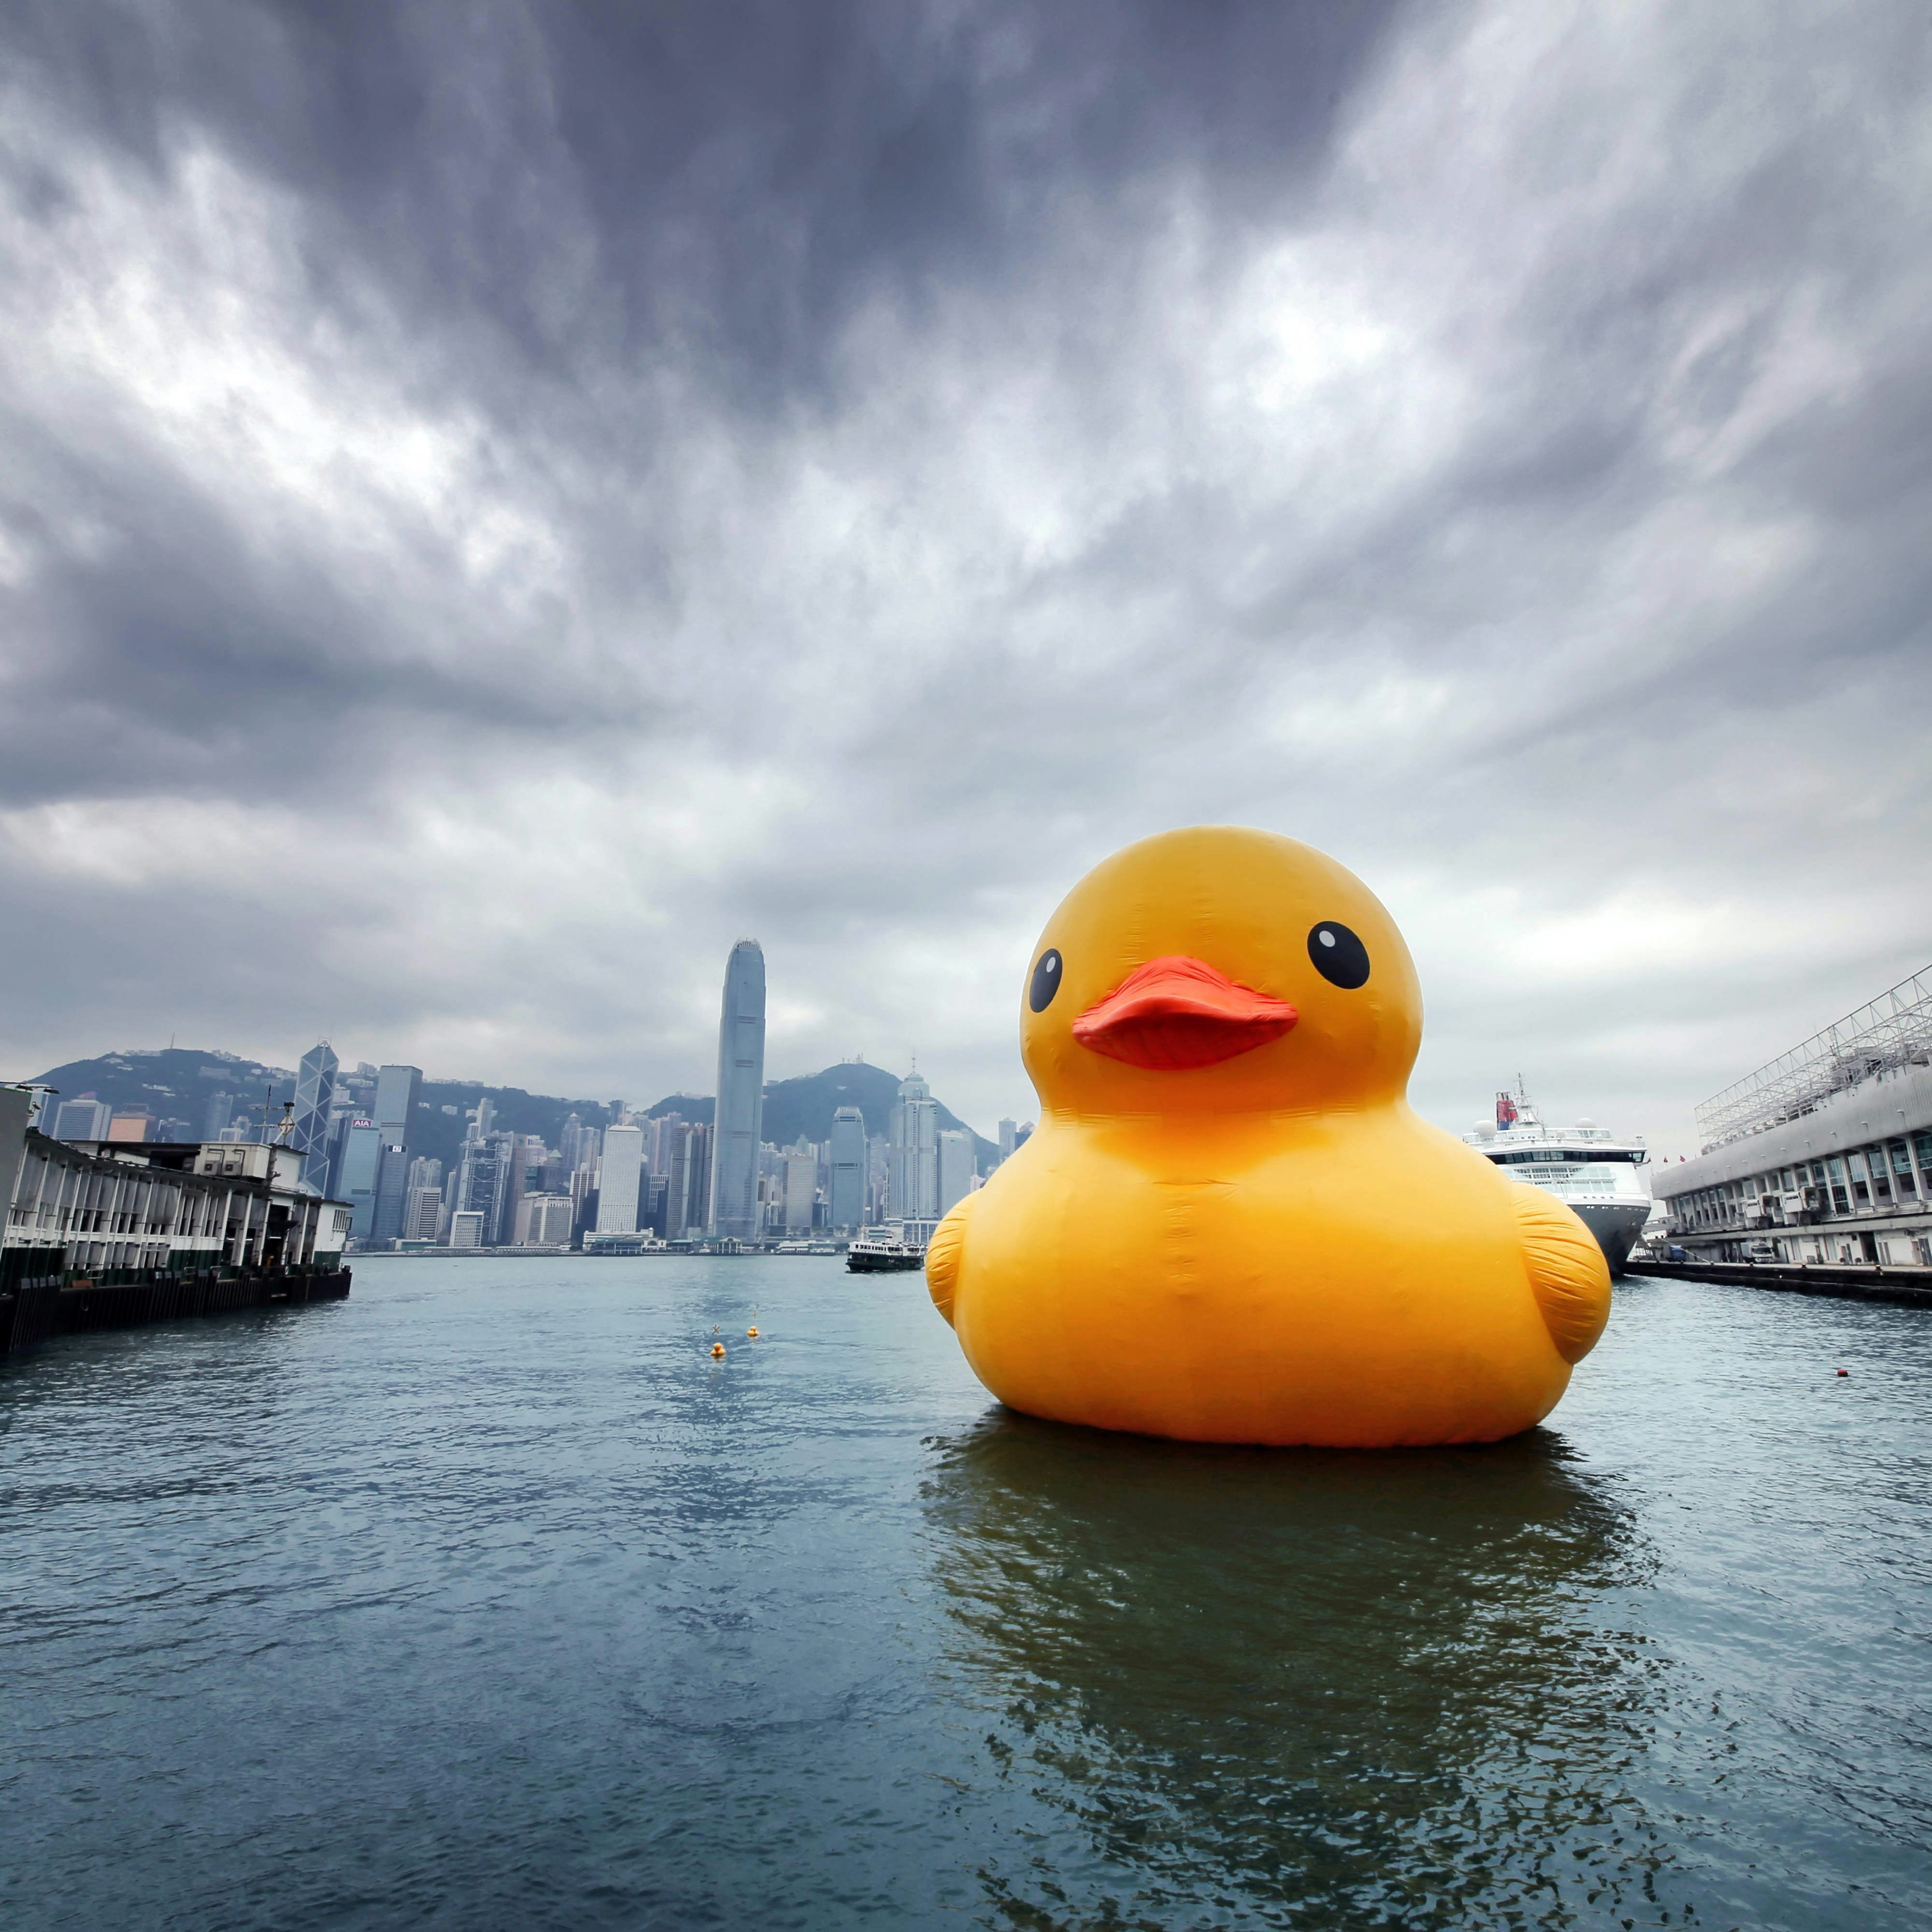 Rubber Duck by Florentijn Hofman (Dutch artist, 'Father of Rubber Duck') in Hong Kong.